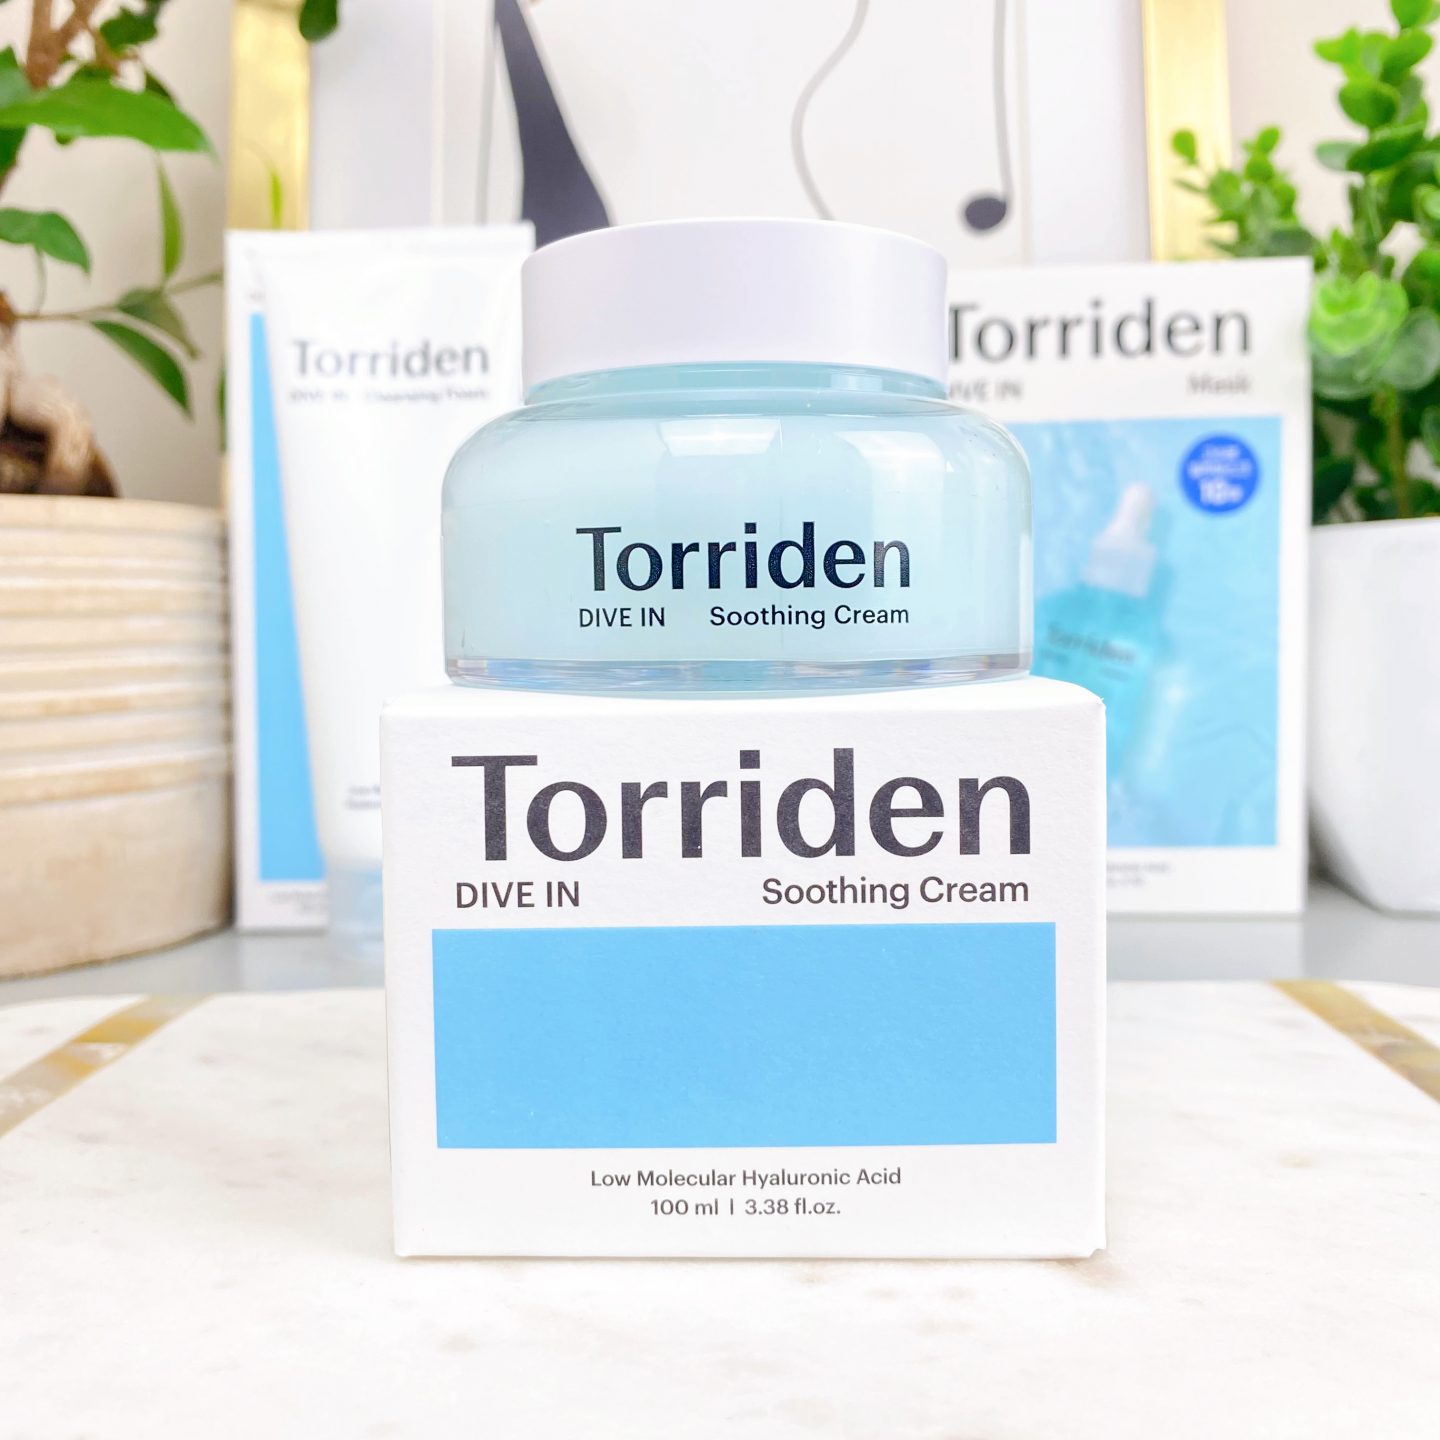 Torriden Dive In Low Molecular Hyaluronic Acid Soothing Cream